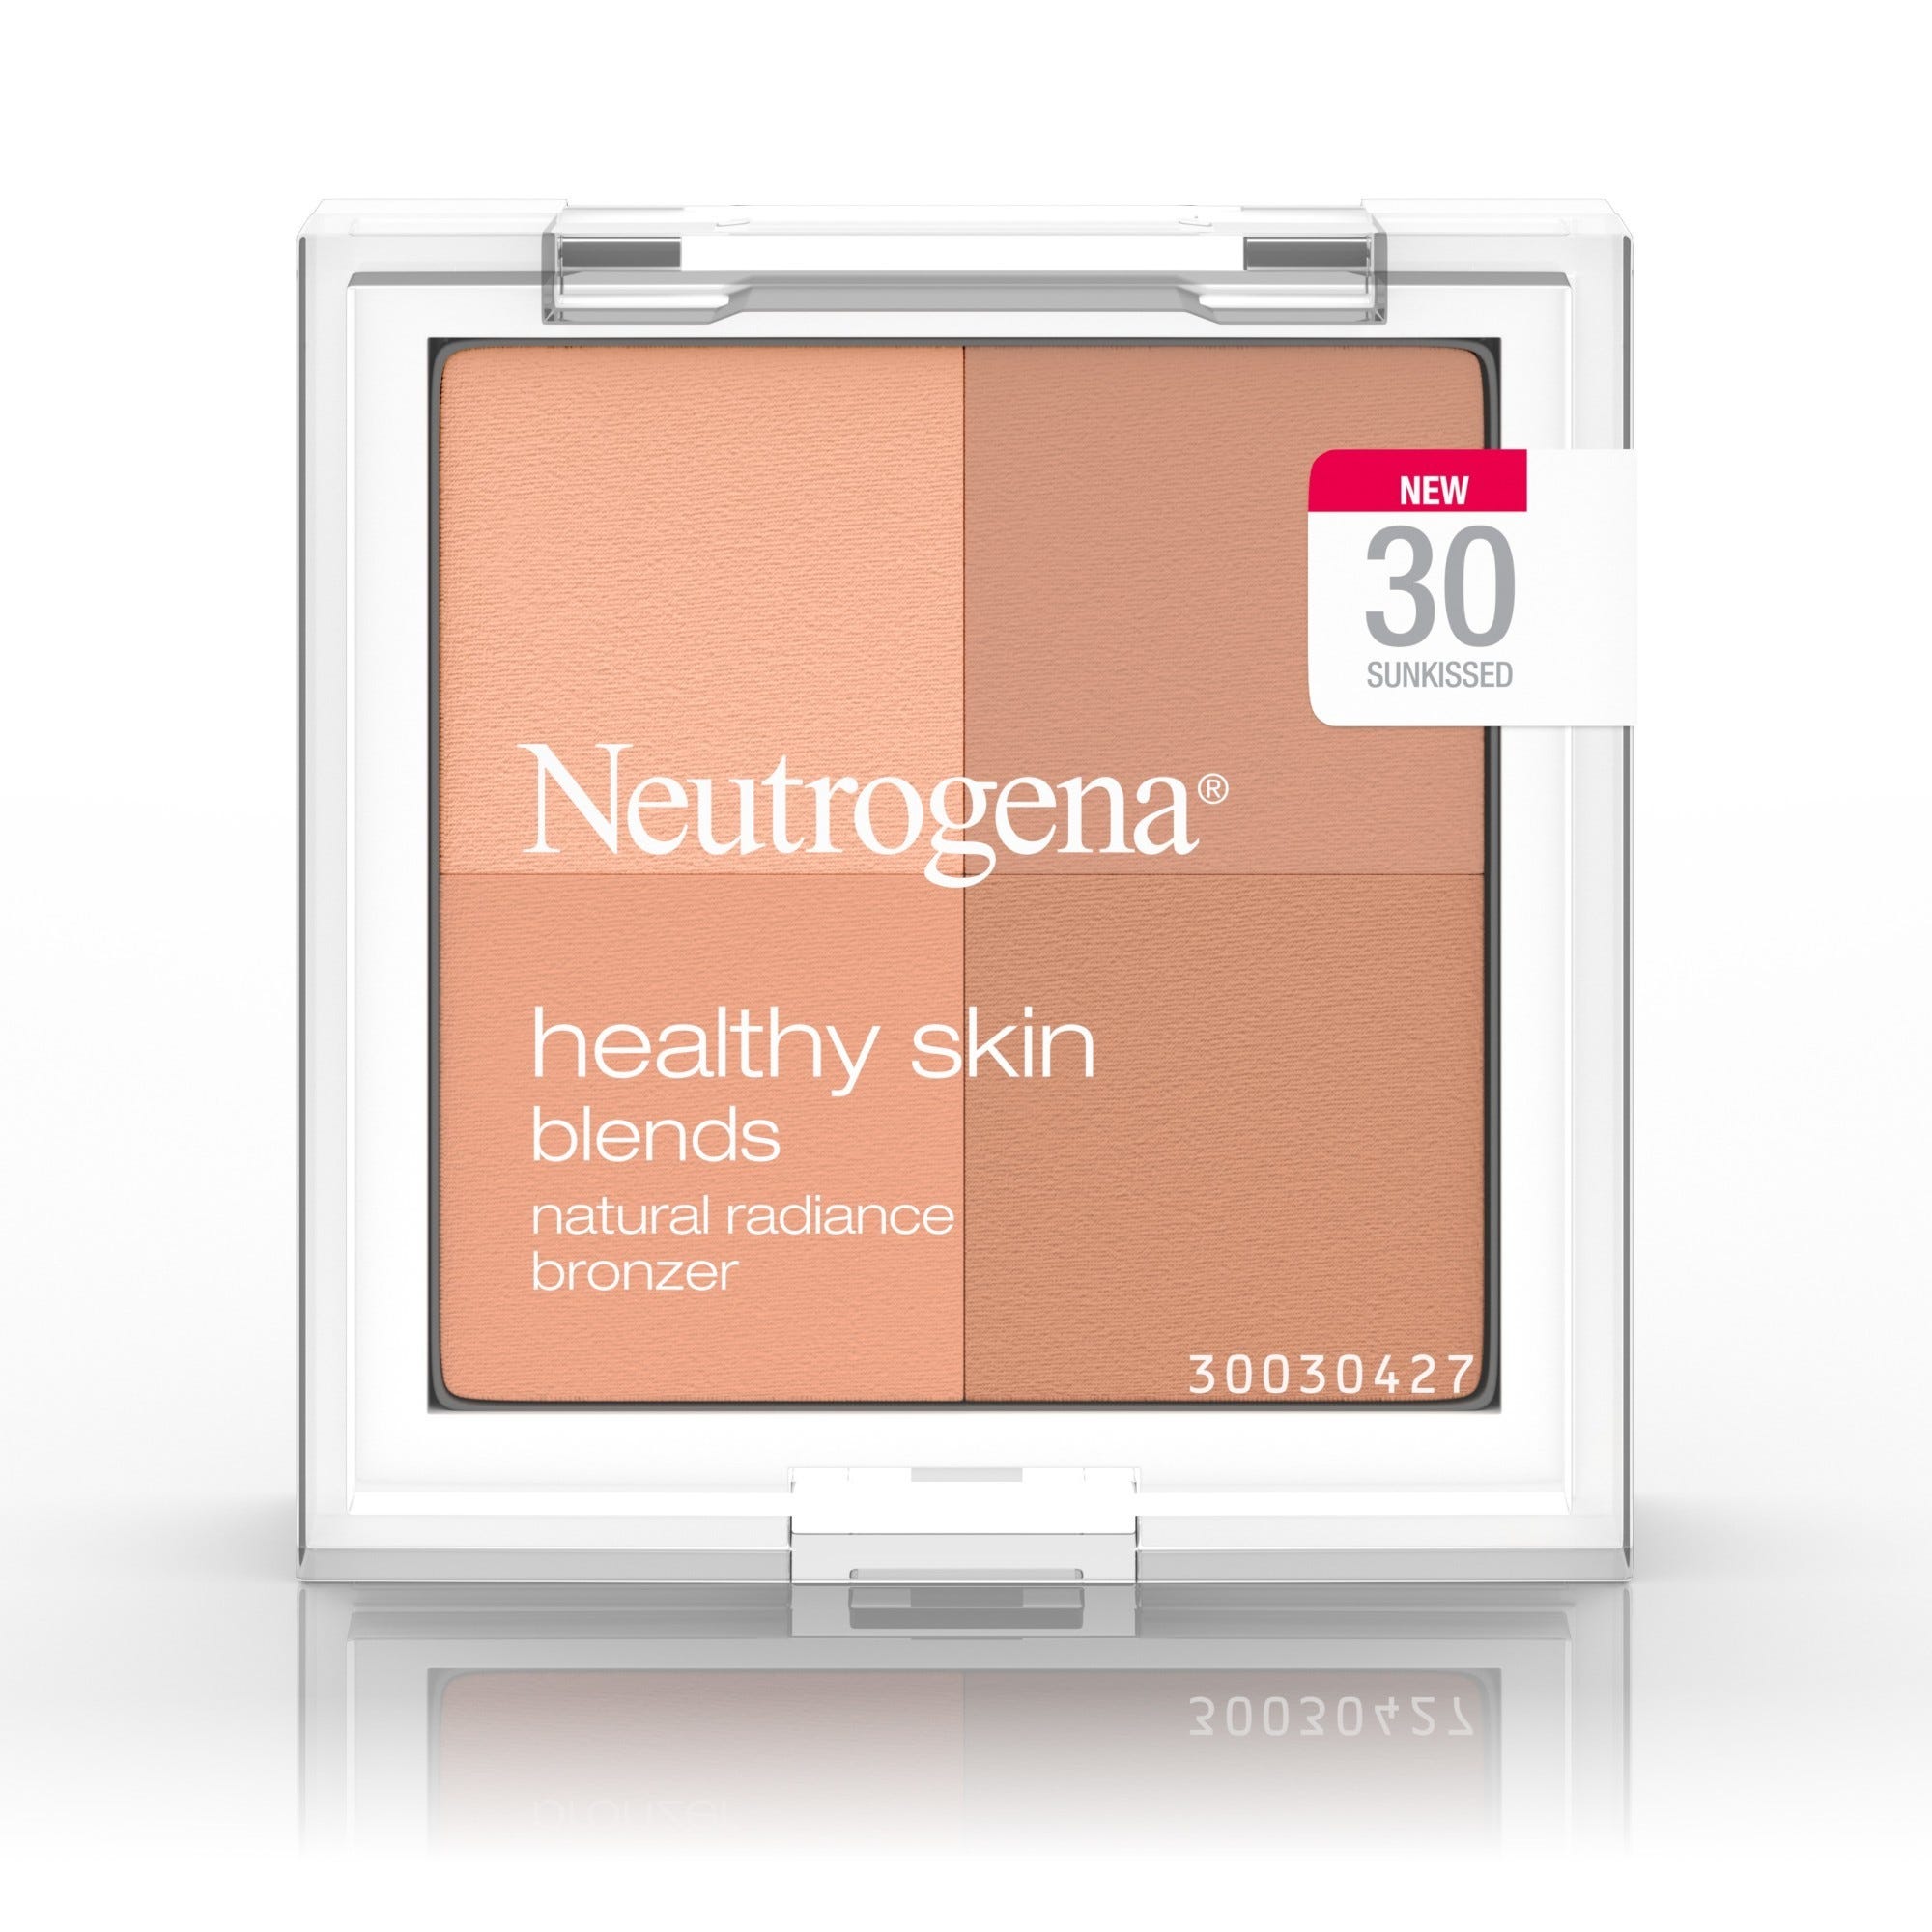 Neutrogena Healthy Skin Blends Natural Radiance Bronzer, Sunkissed - 0.3 oz